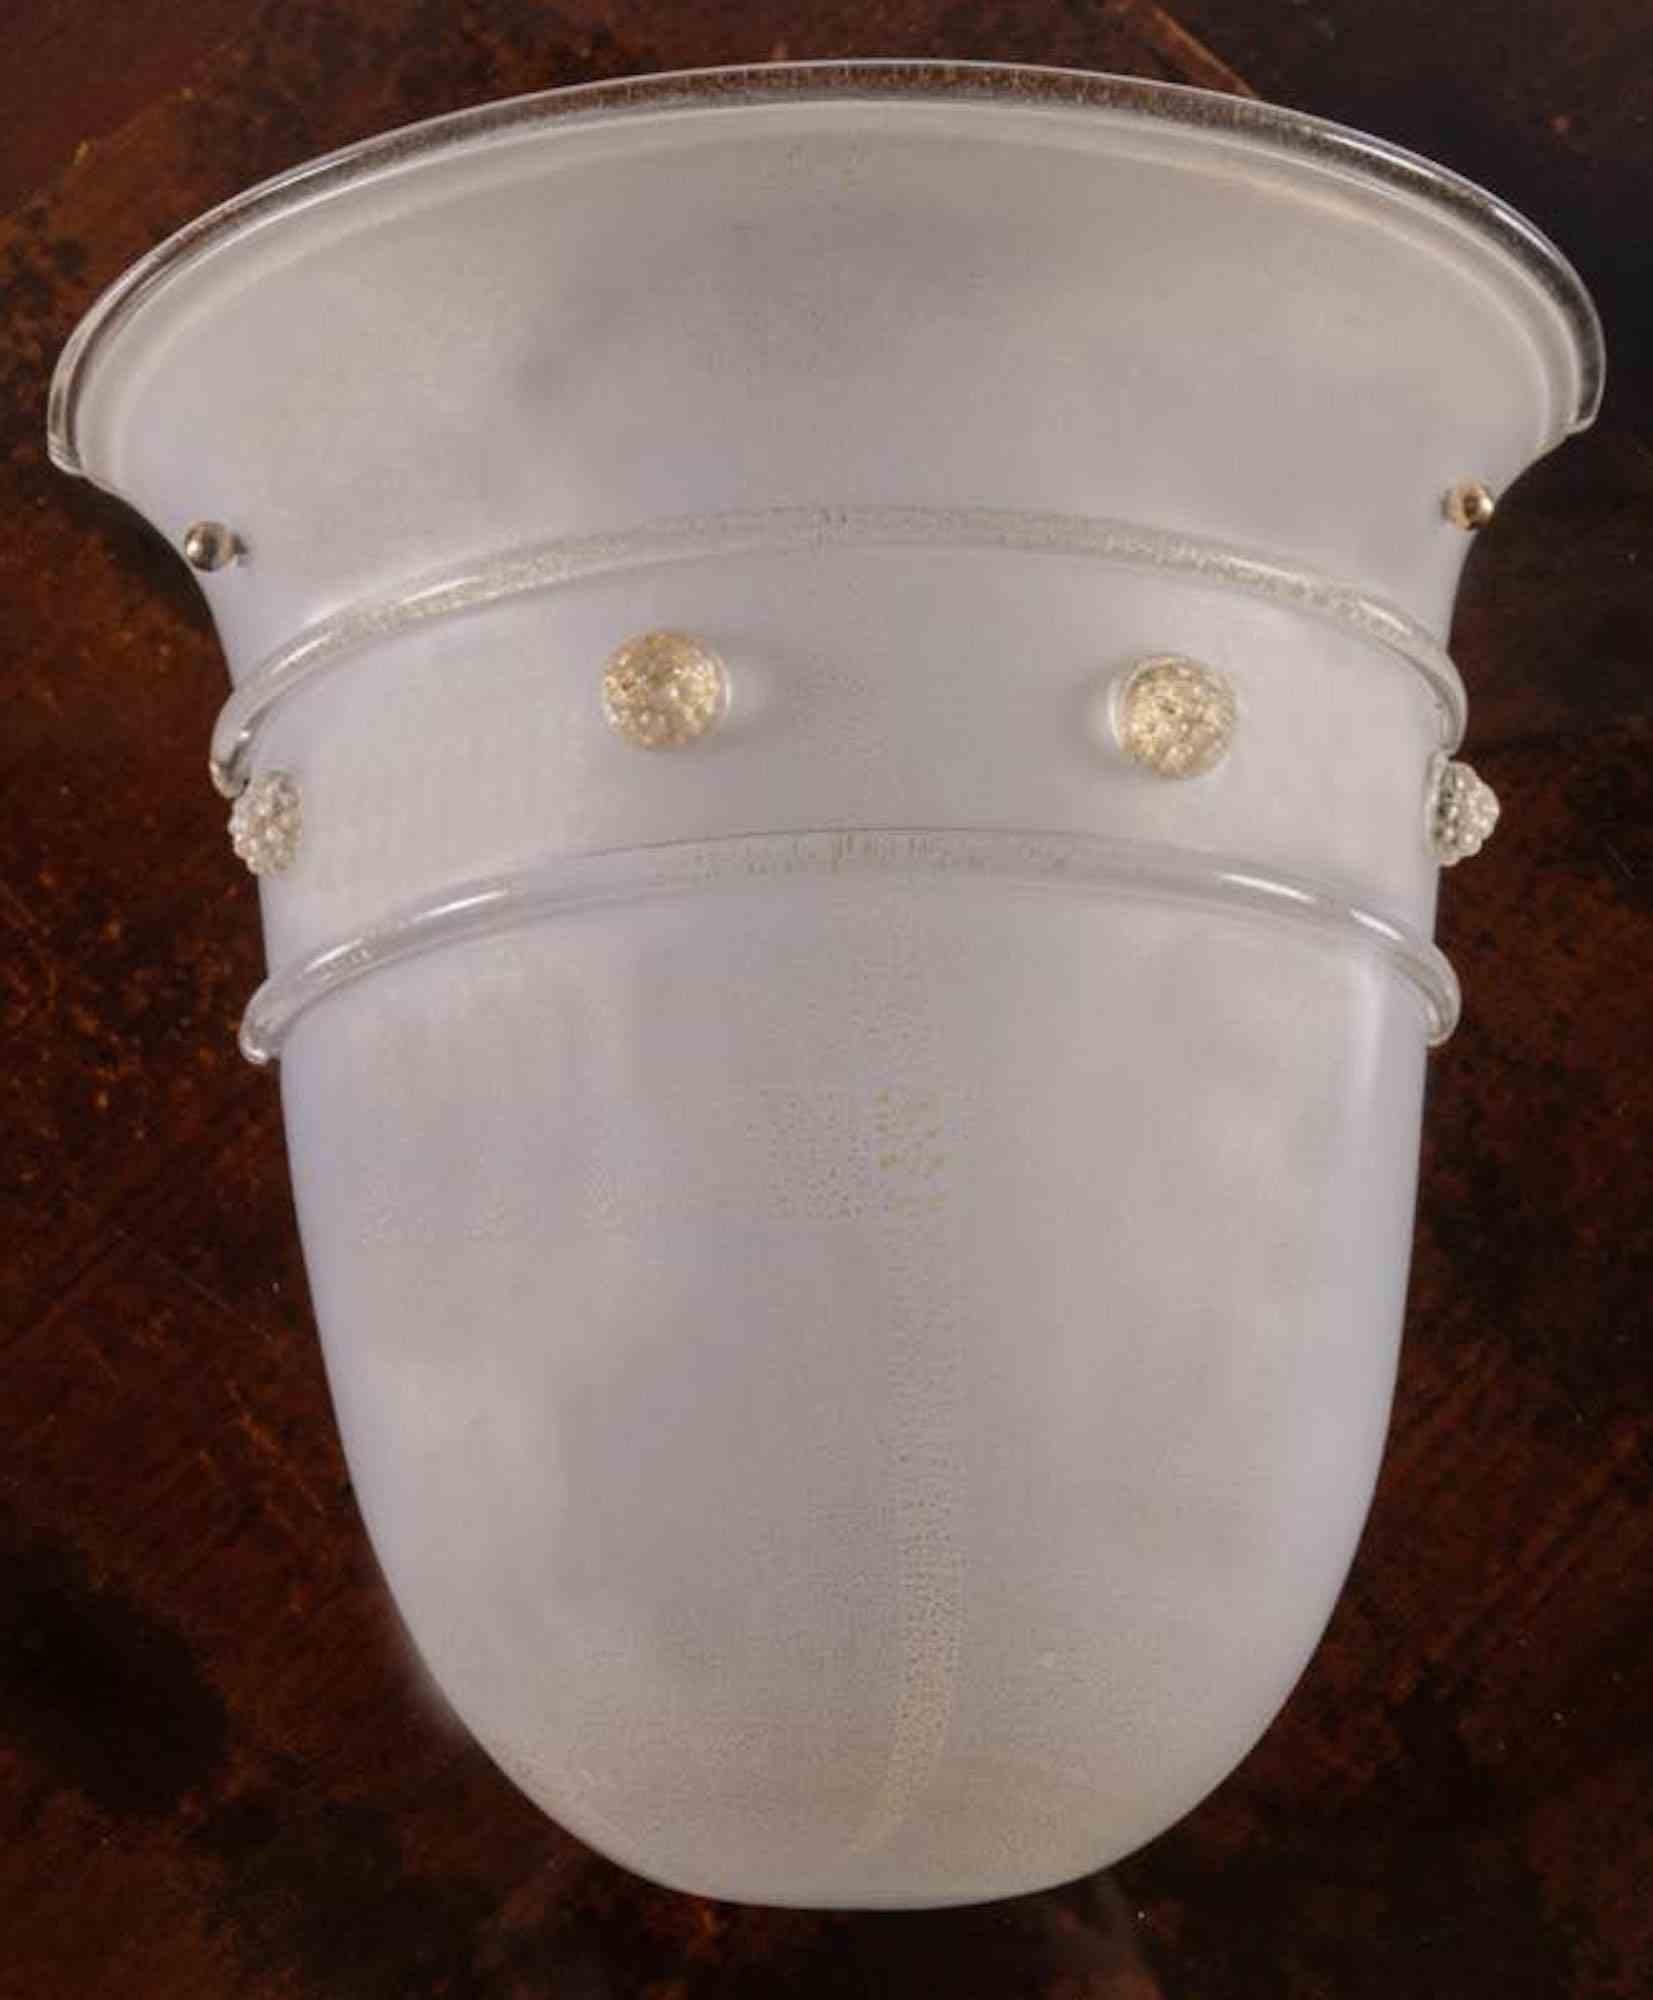 Barovier & Toso, Große einflammige Leuchte aus weißem Milchglas, Murano, 1980er Jahre.

Einschlüsse in Goldstaub, heiß aufgetragene Reliefdekorationen, innen mit der Herstellermarke versehen.

H cm 31x32x15,5 

Guter Zustand.